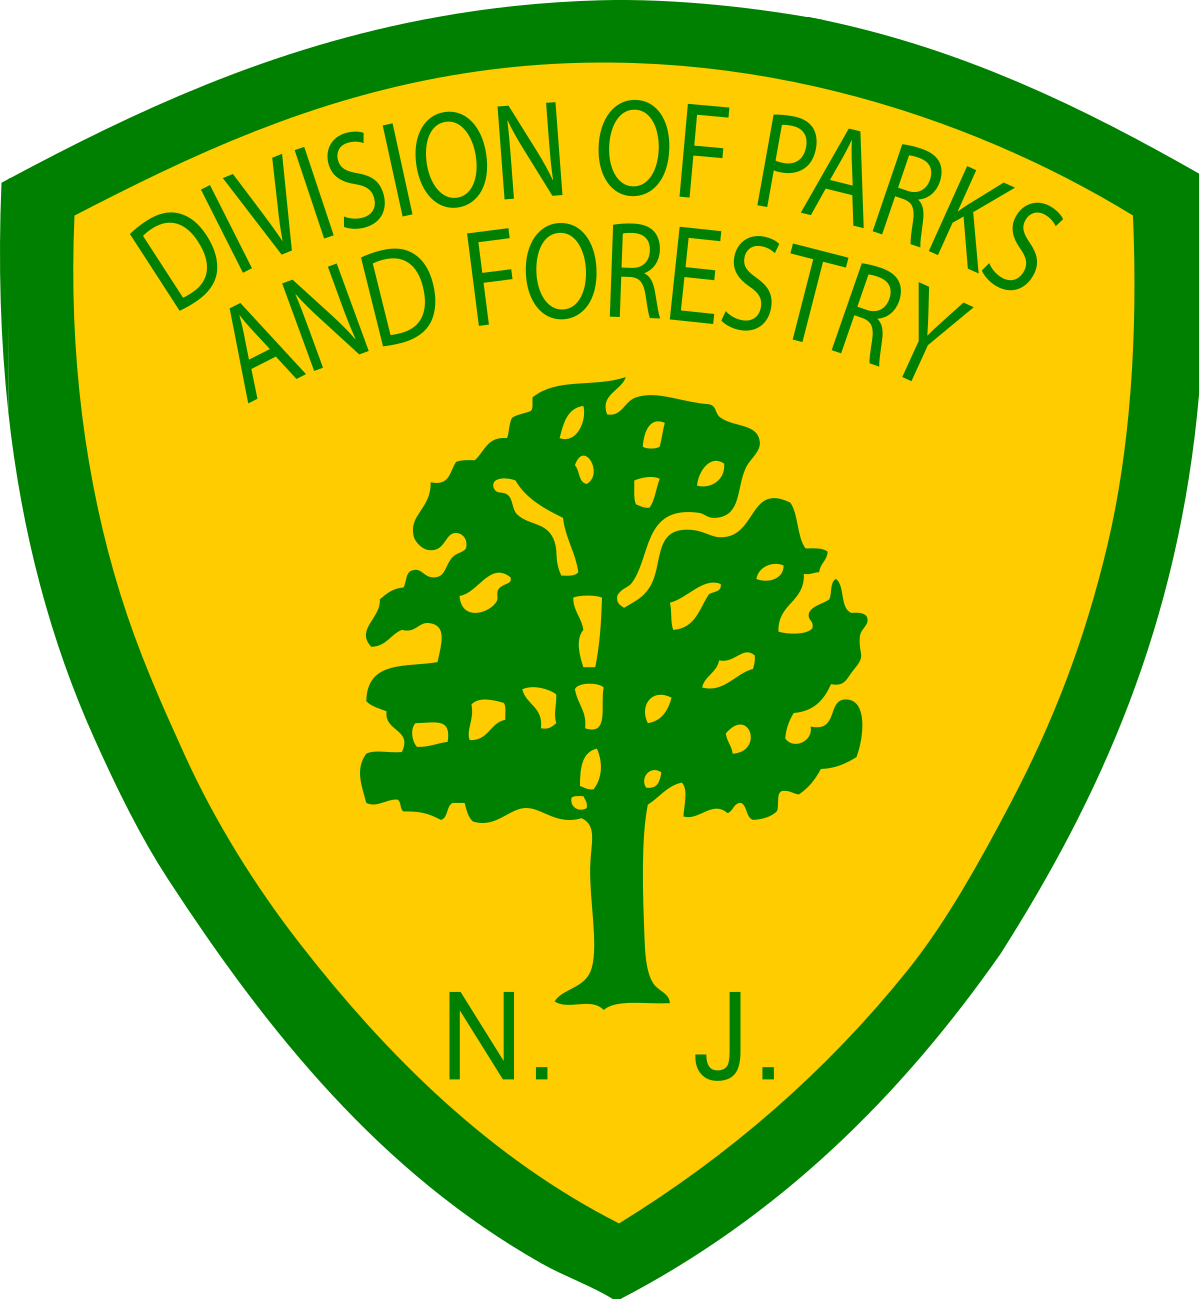 NJ Div. of Parks & Forestry logo link to website